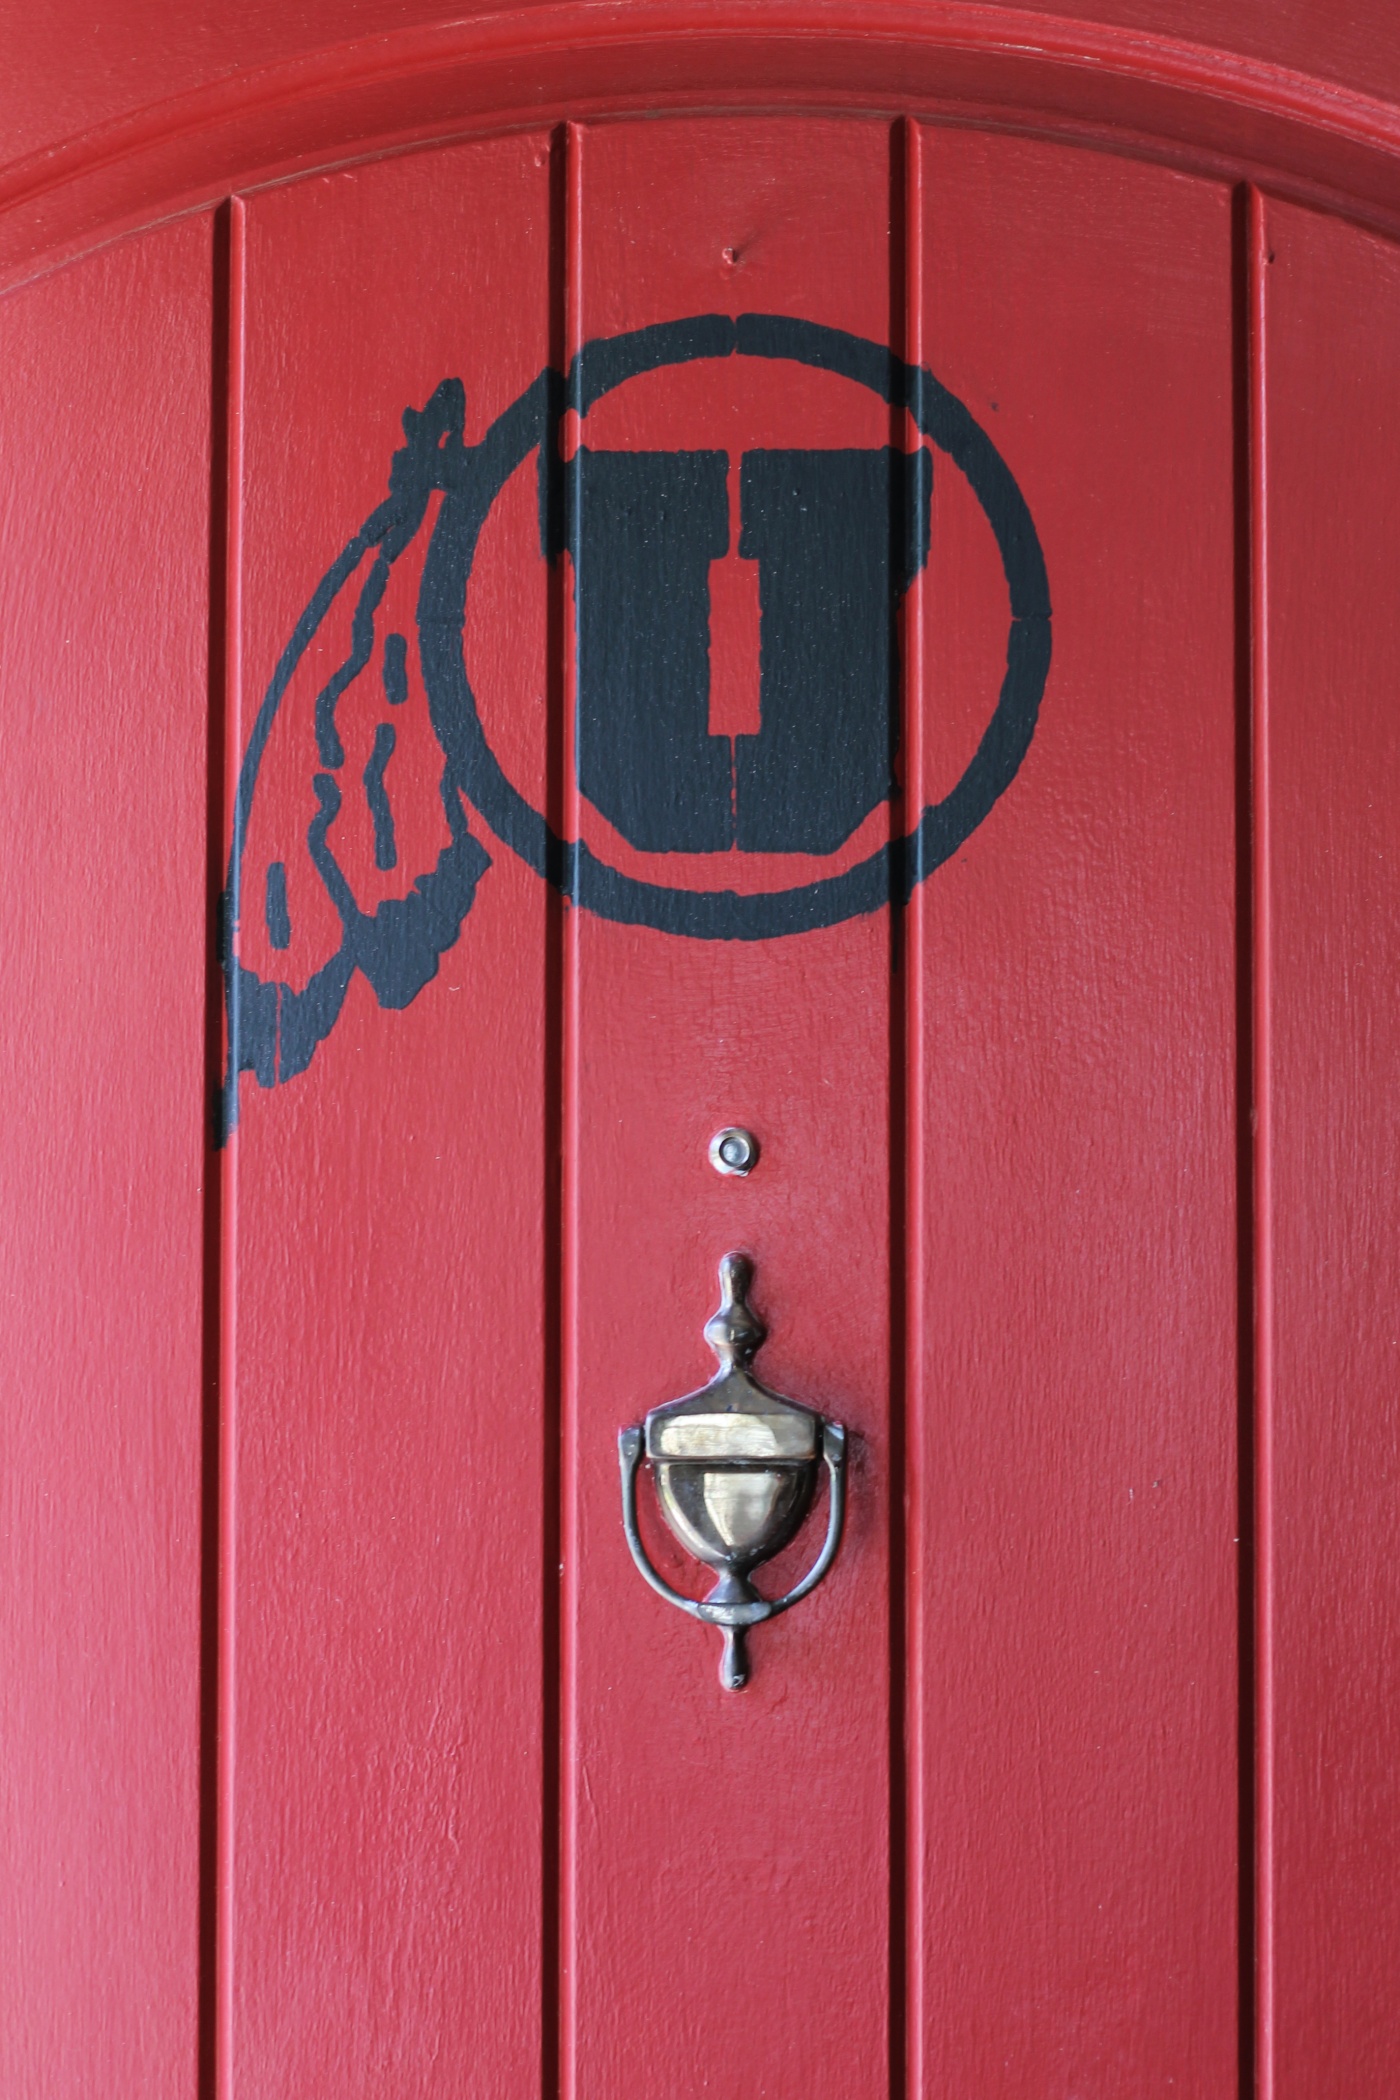 University of Utah Stencil on Front Door. Go Utes!